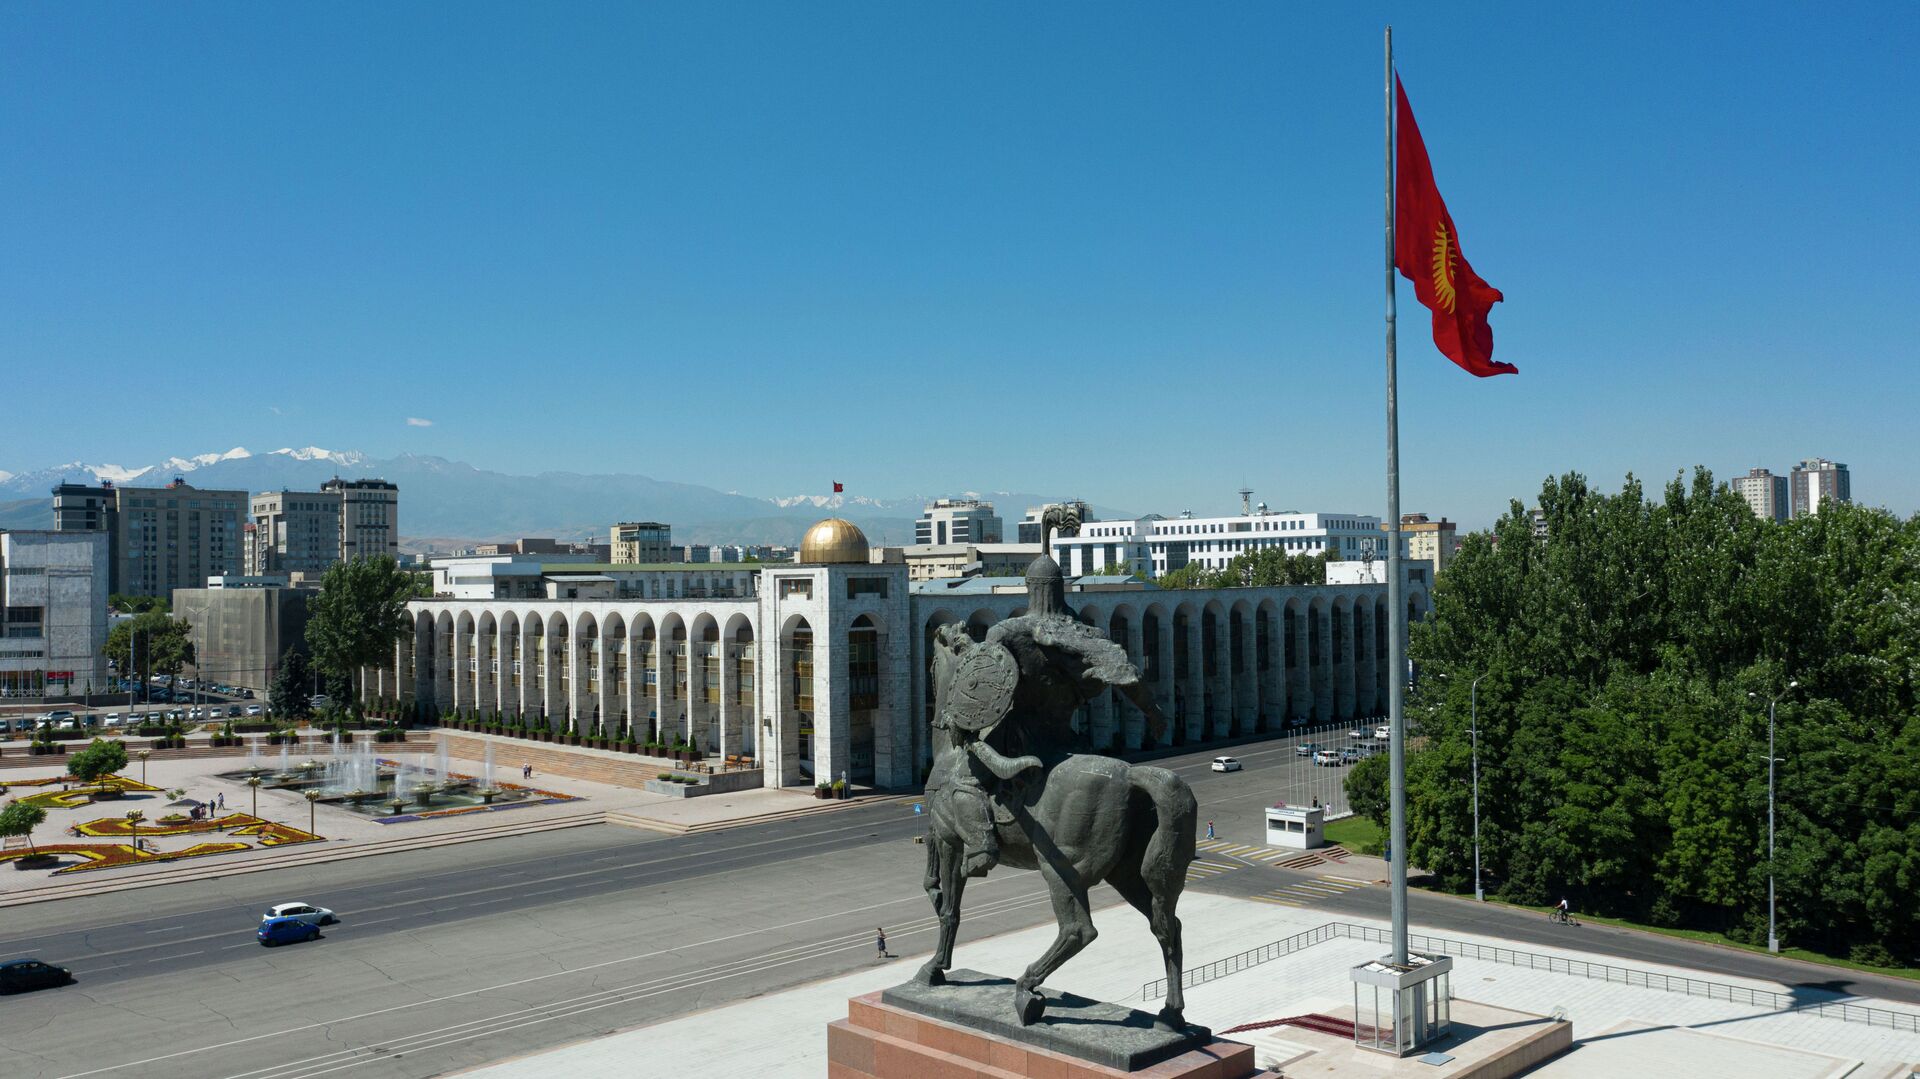 Ղրղզստանում նախատեսվում էր պետական հեղաշրջում իրականացնել օգոստոսի 31-ին՝ Անկախության օրը